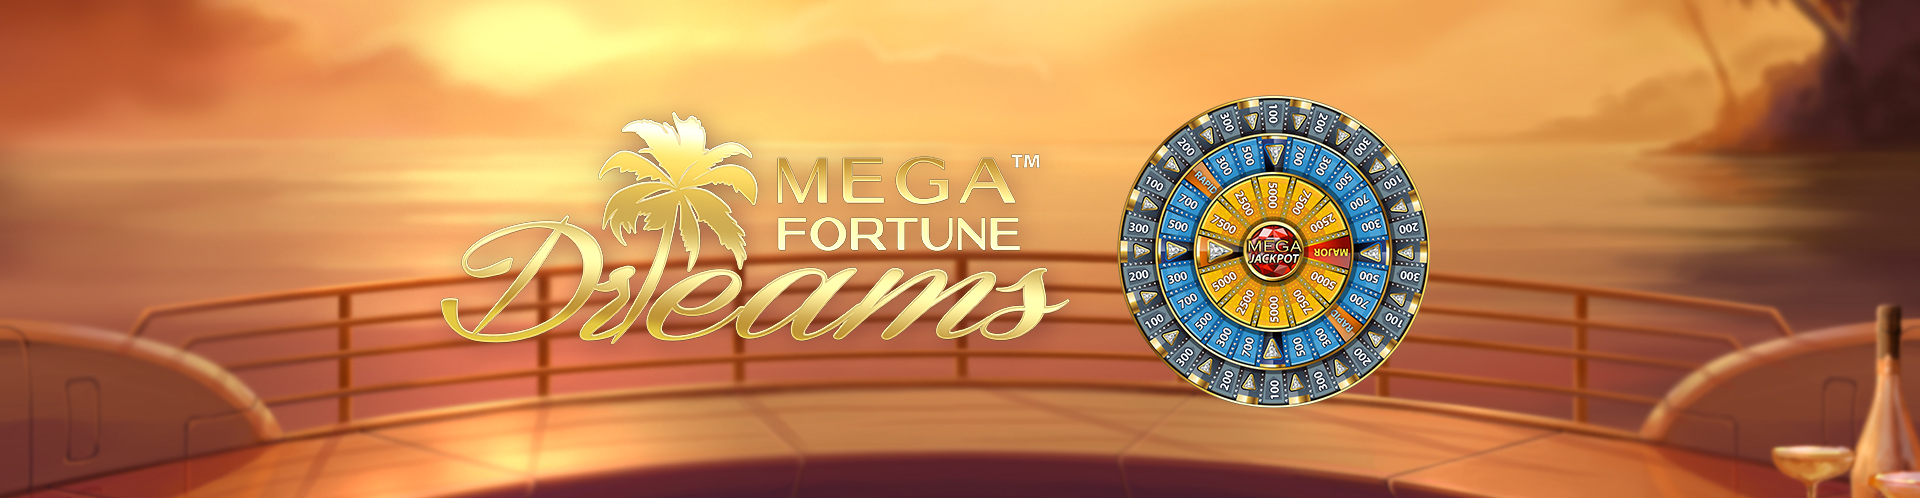 Mega Fortune Dreams Mega Jackpot